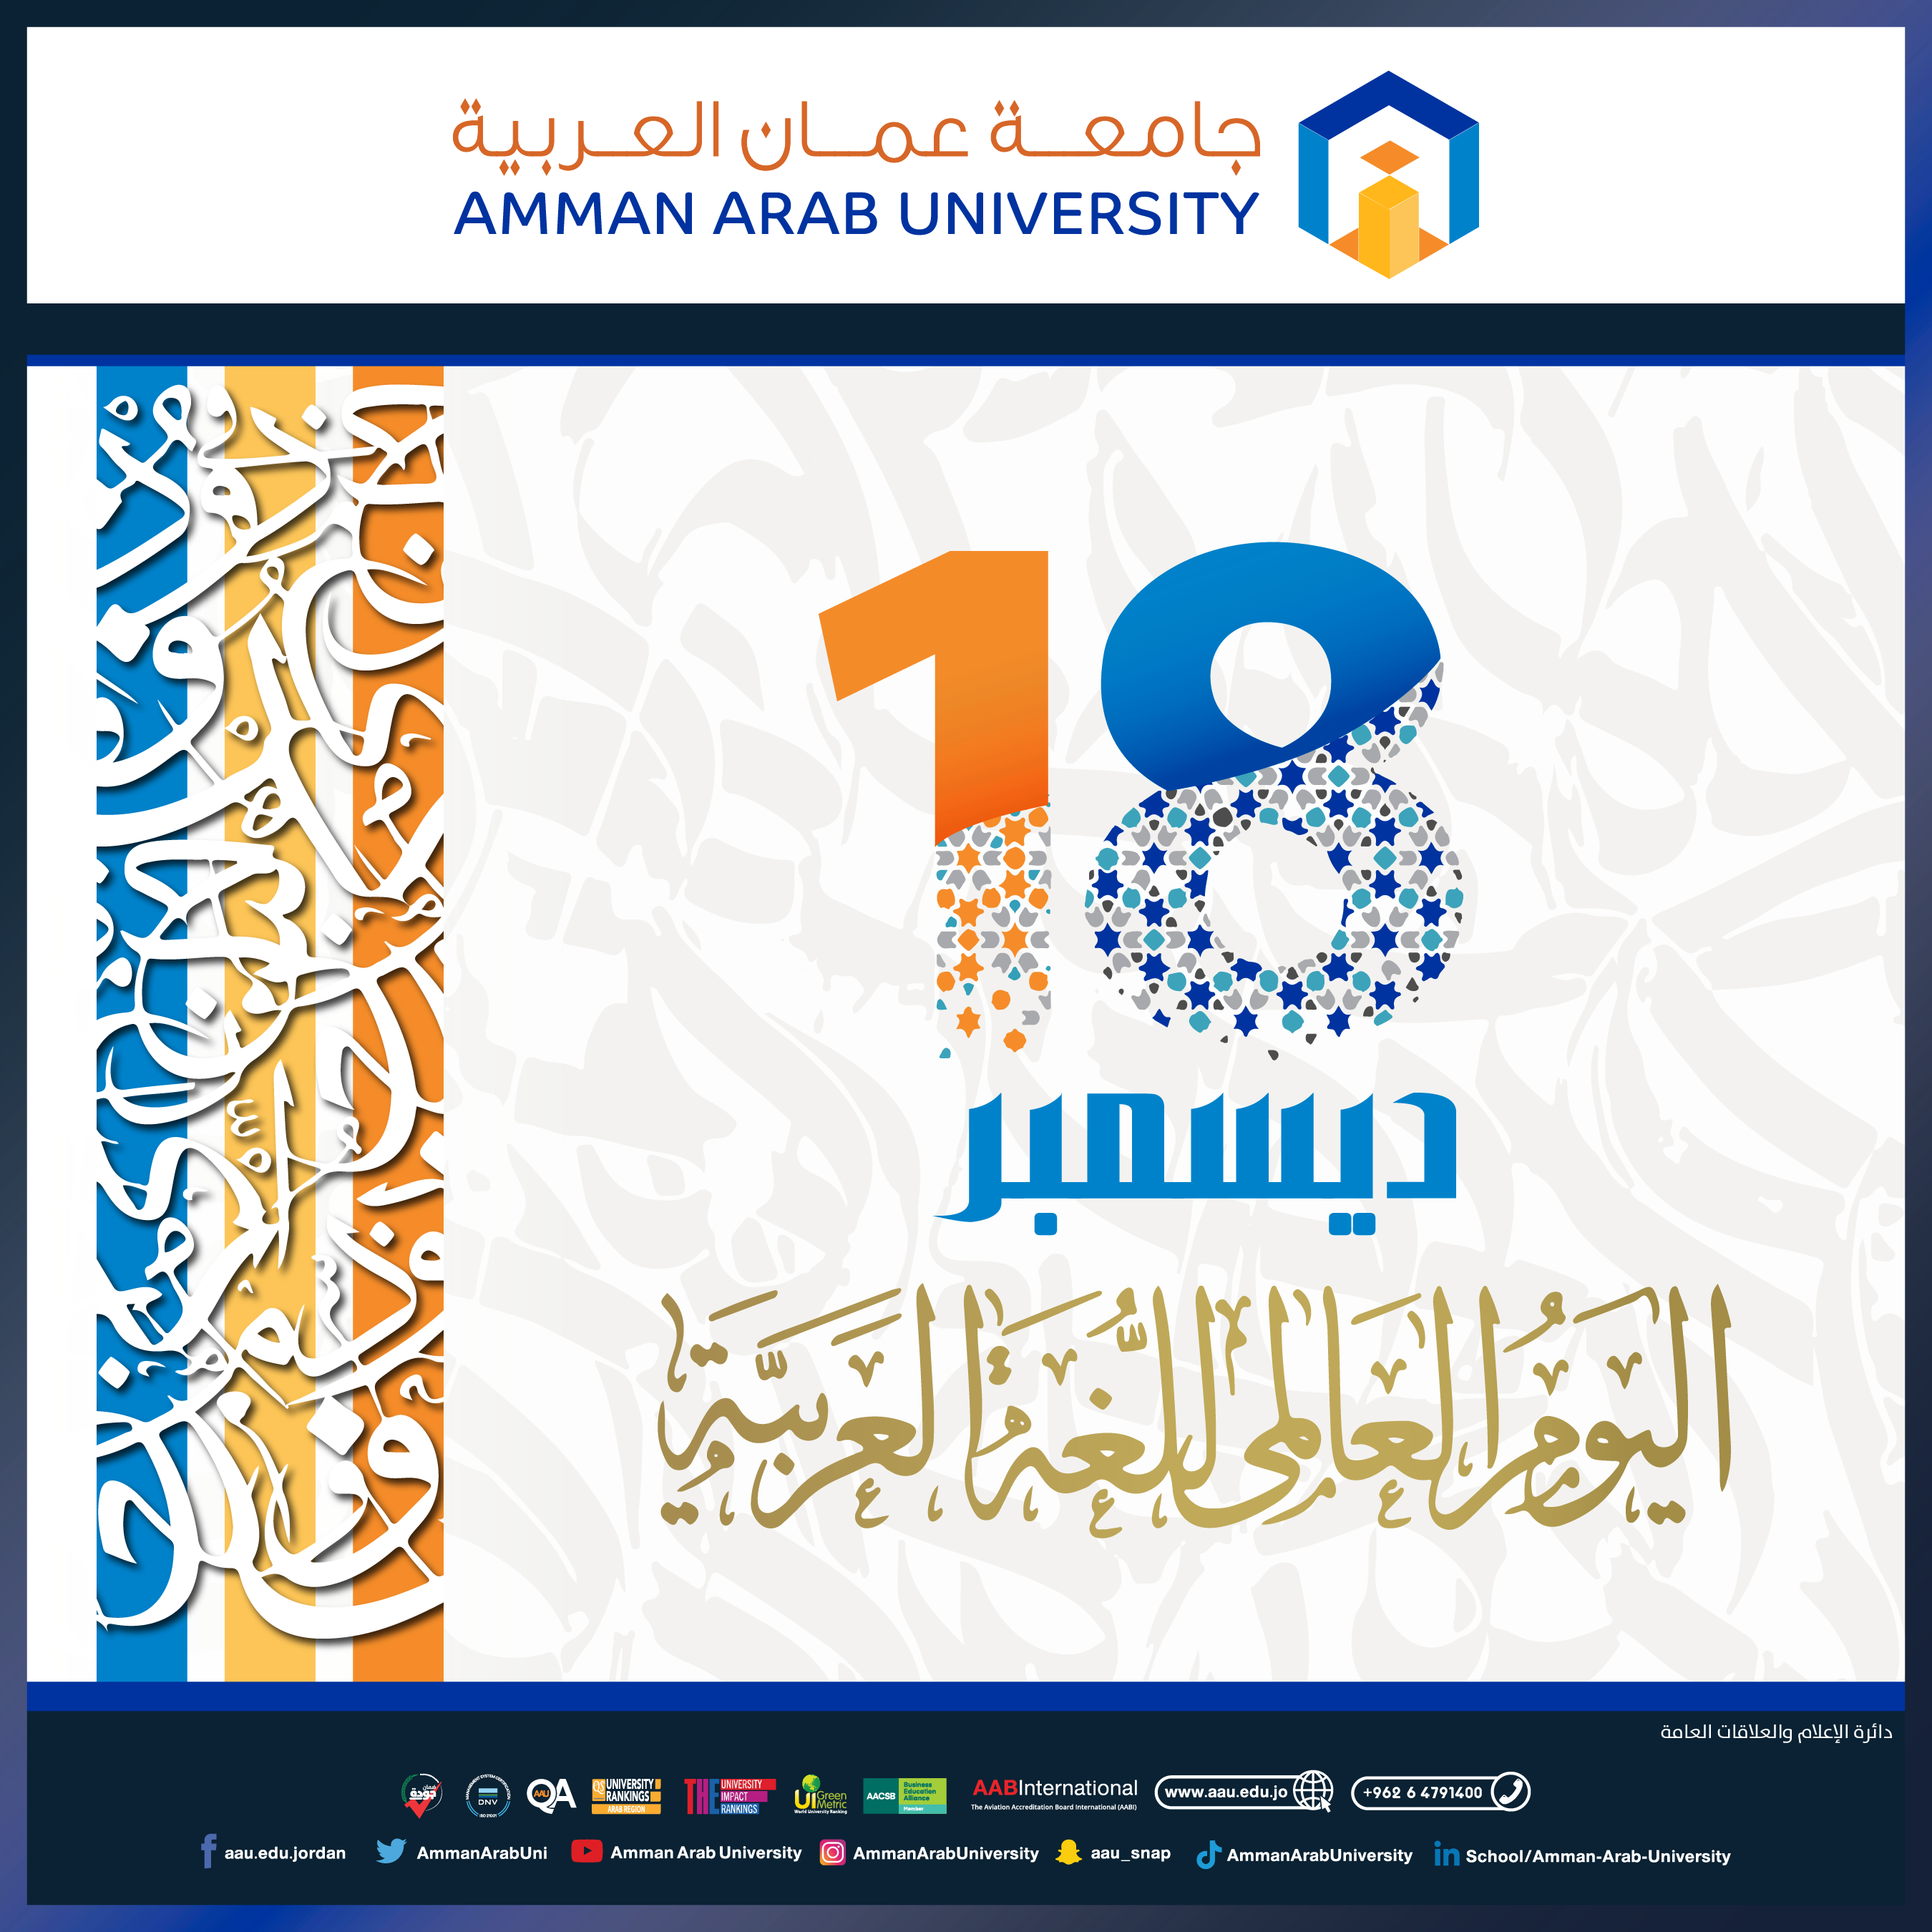 مناسبة اليوم العالمي للغة العربية